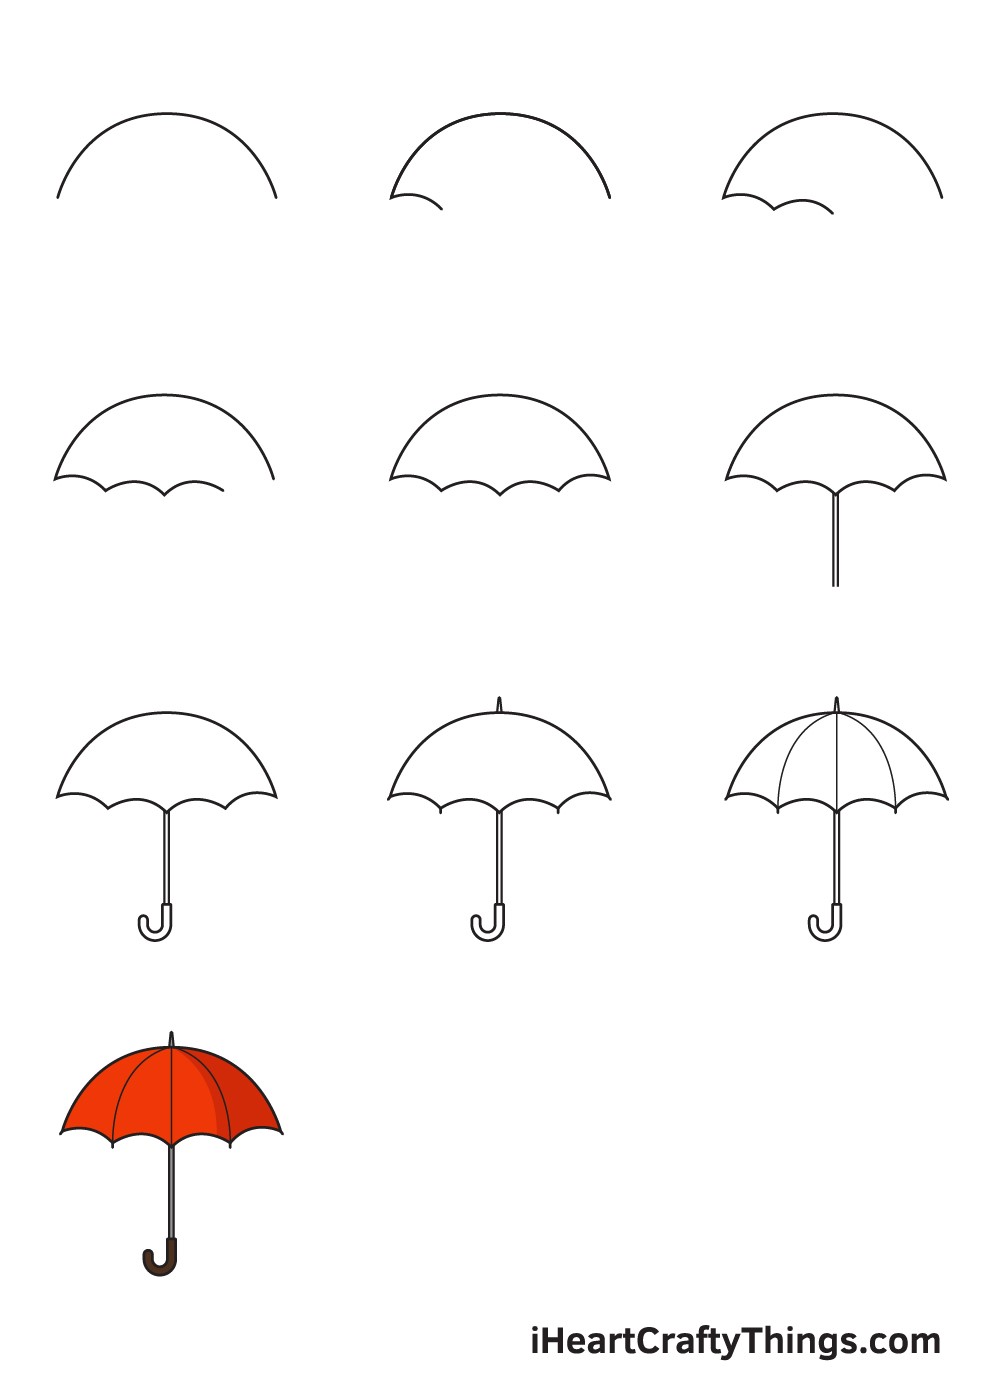 Regenschirm-Idee 5 zeichnen ideen